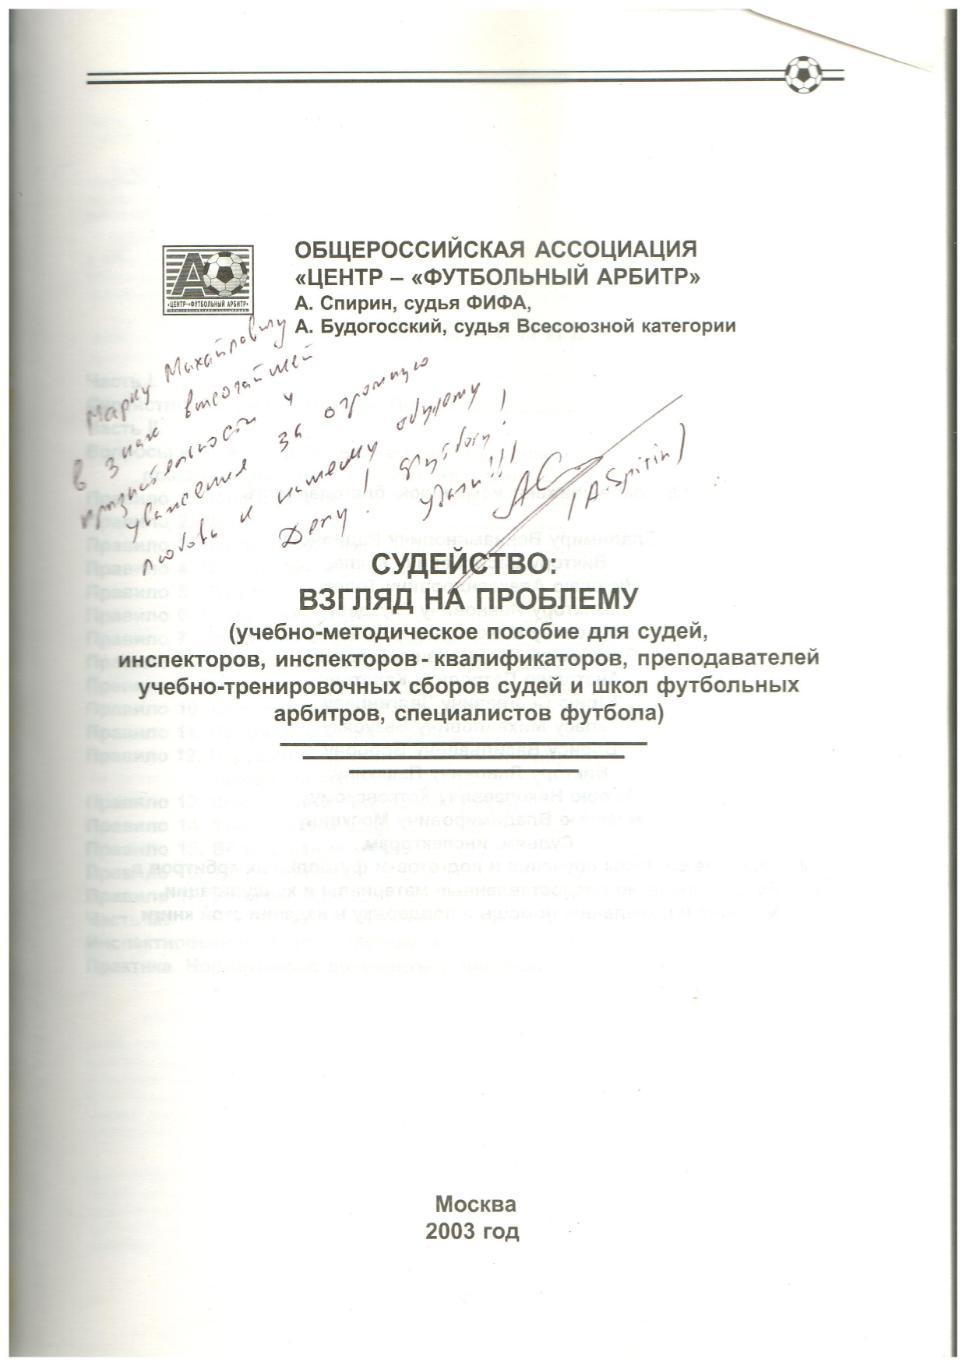 Судейство Взгляд на проблему Методическое пособие 2003 Автограф Алексей Спирин 1